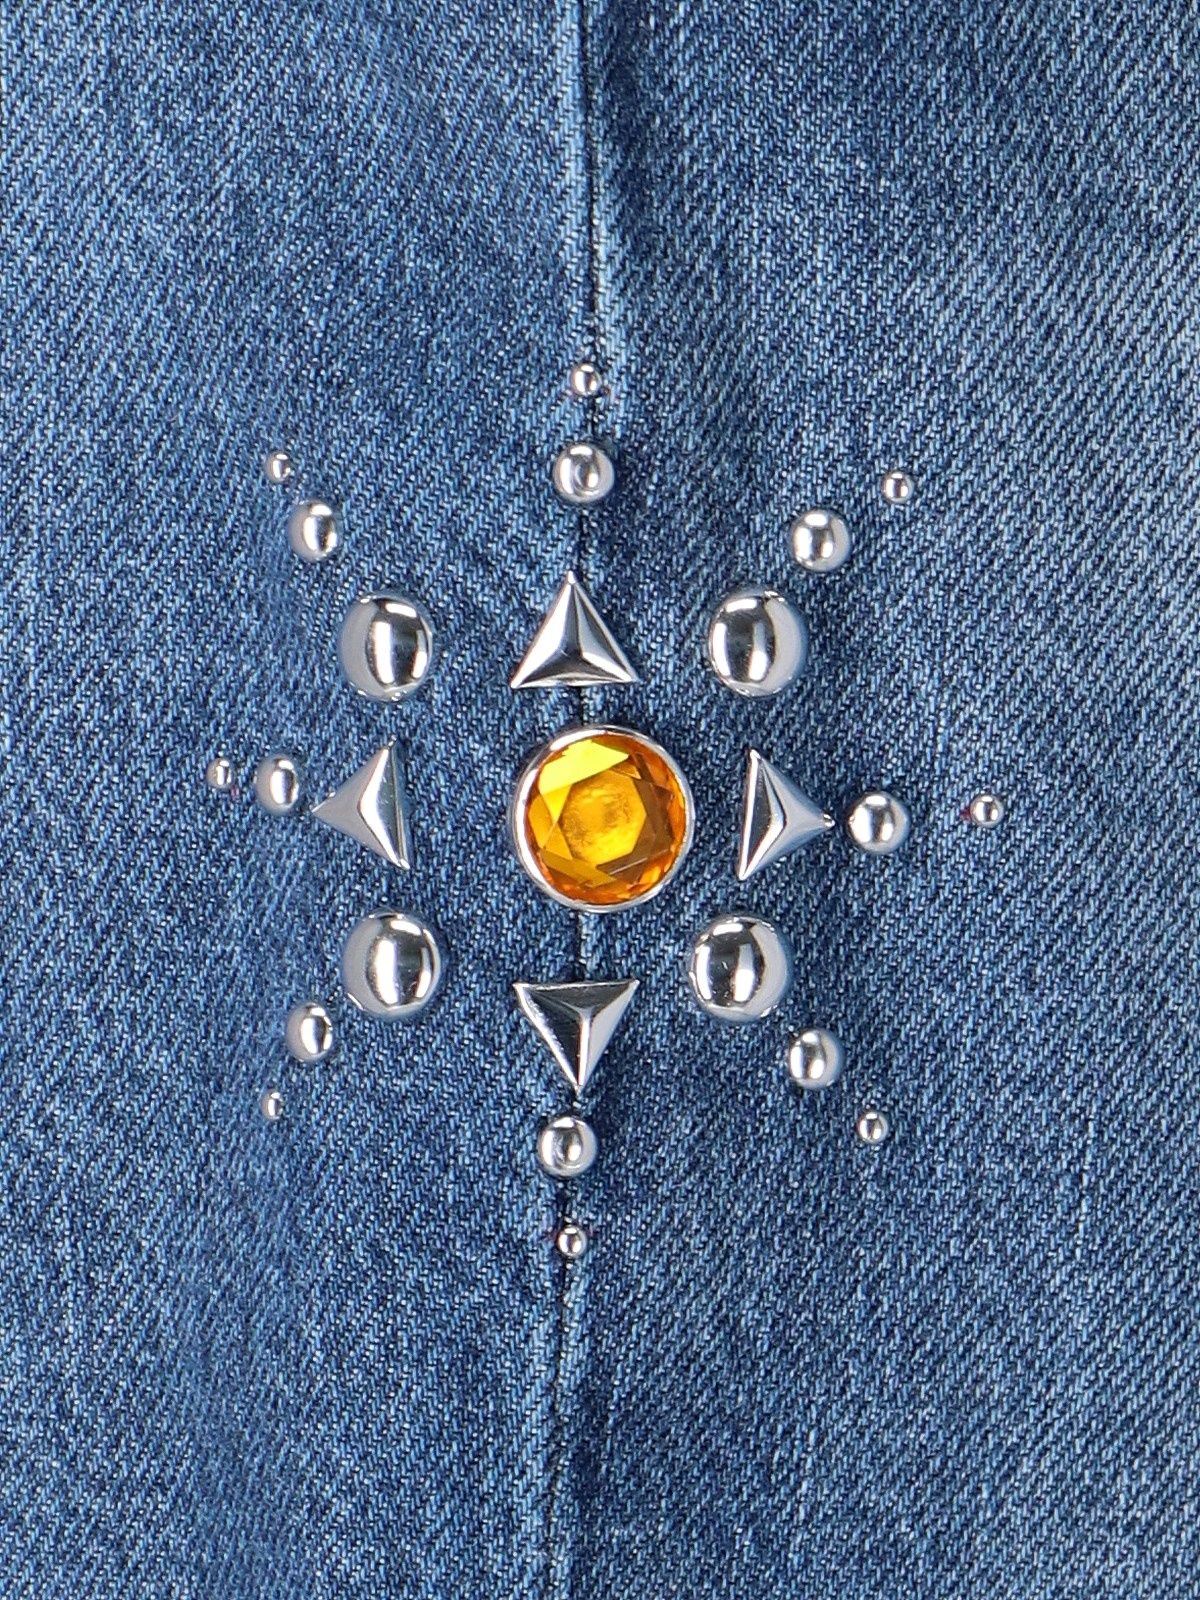 Jeans dettaglio borchie